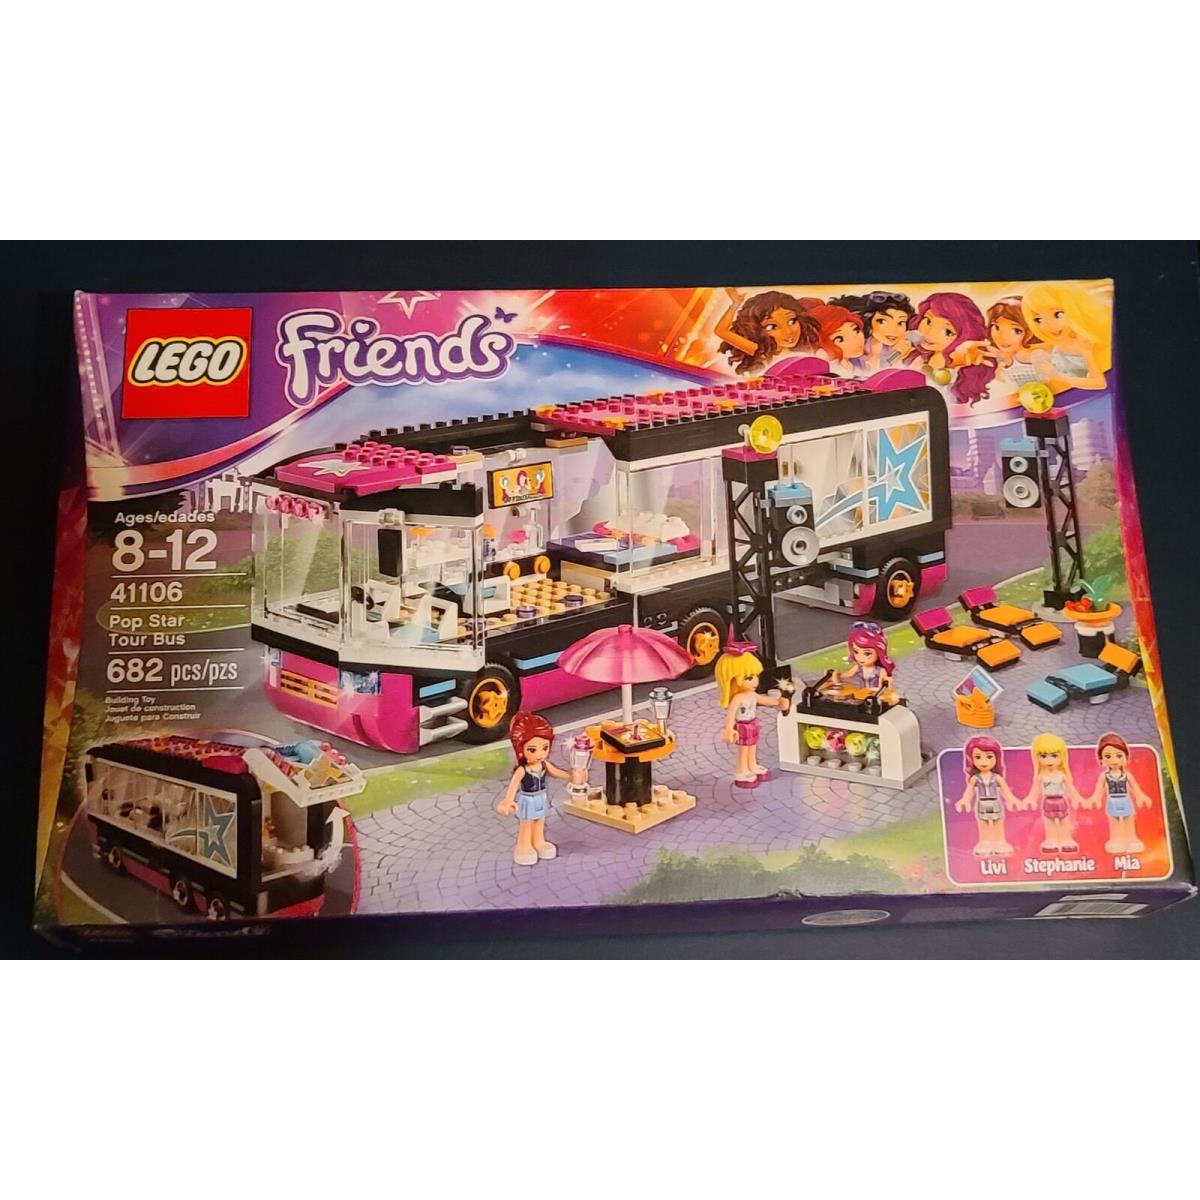 Lego 41106 Friends Pop Star Tour Bus Set